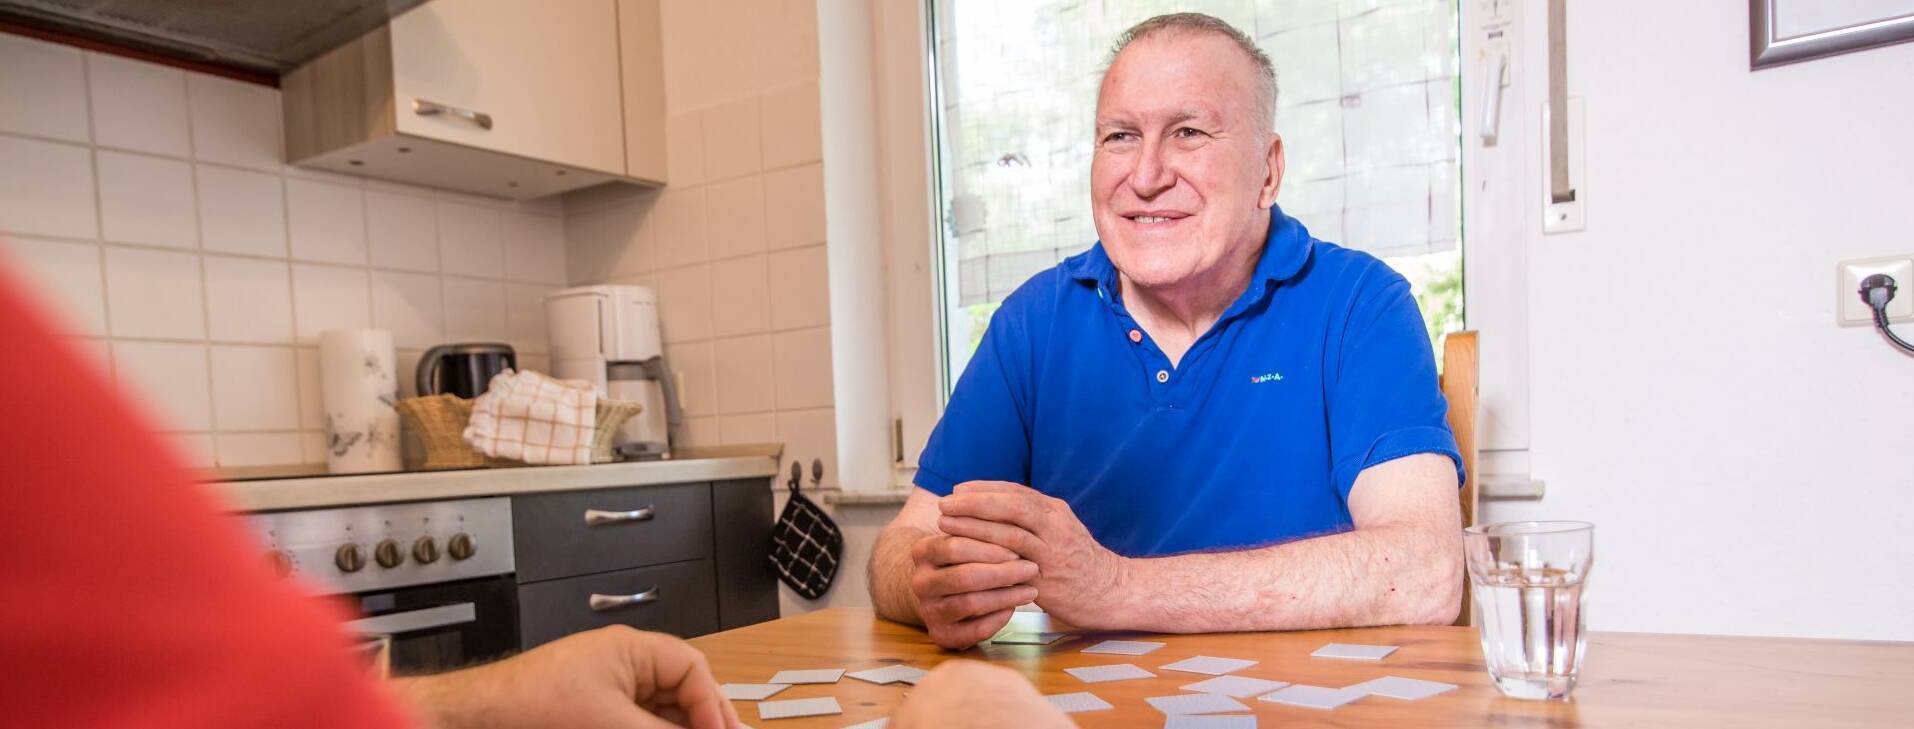 Alter Mann wird beim Kartenspielen gezeigt, und lächelt fröhlich.